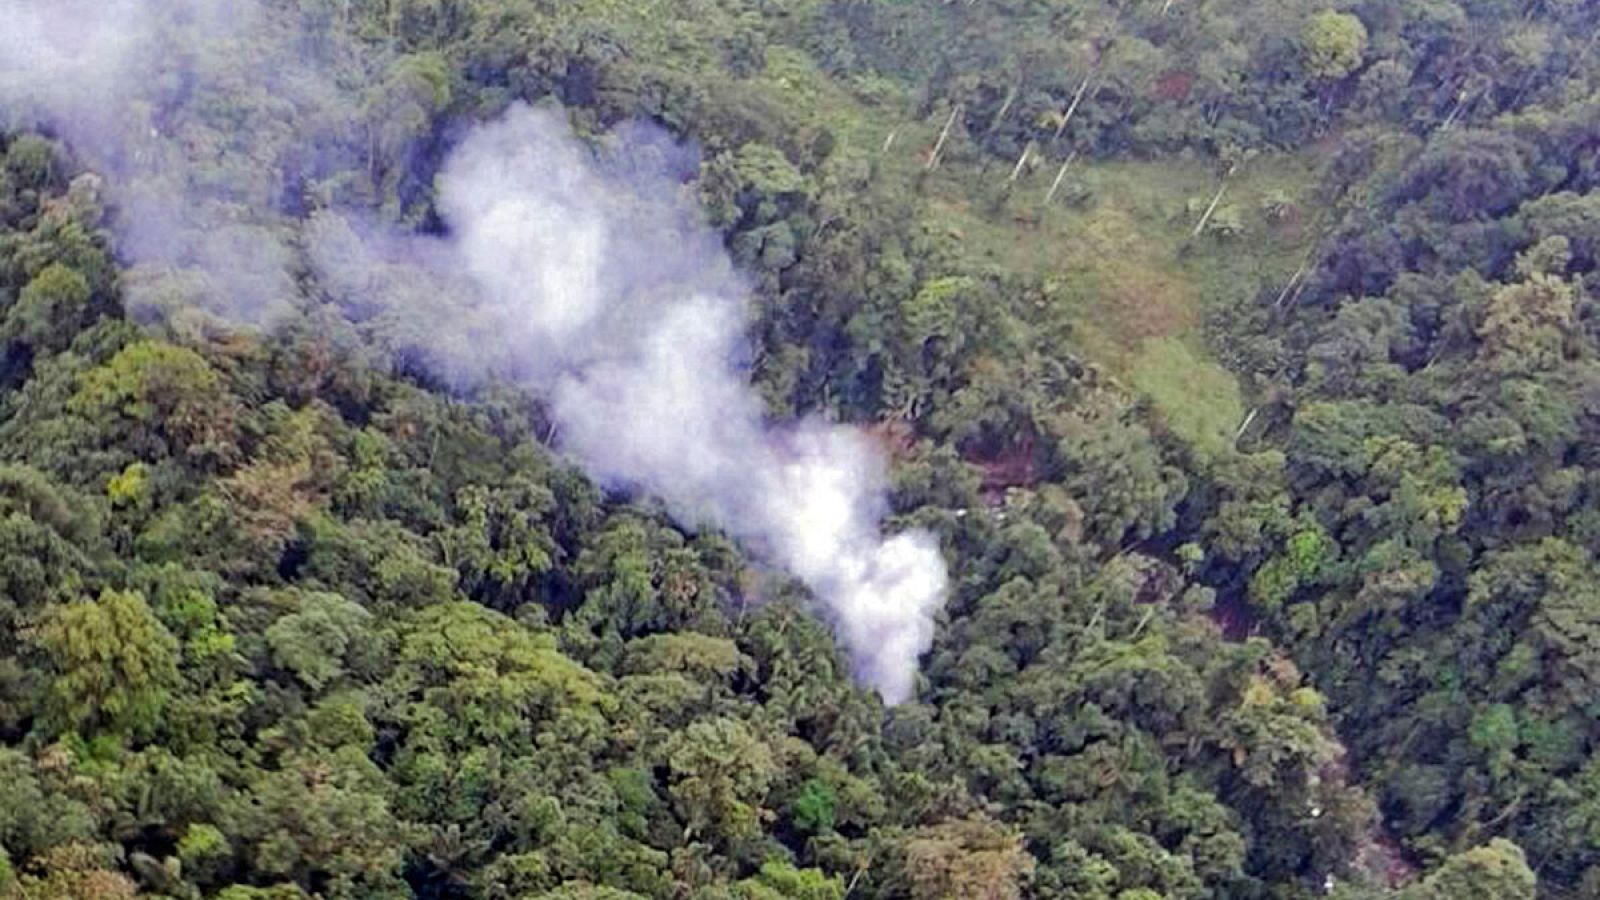 Fotografía facilitada por la policía colombiana que muestra el lugar donde se ha accidentado un helicóptero militar con 18 agentes a bordo en la región de Antioquia.